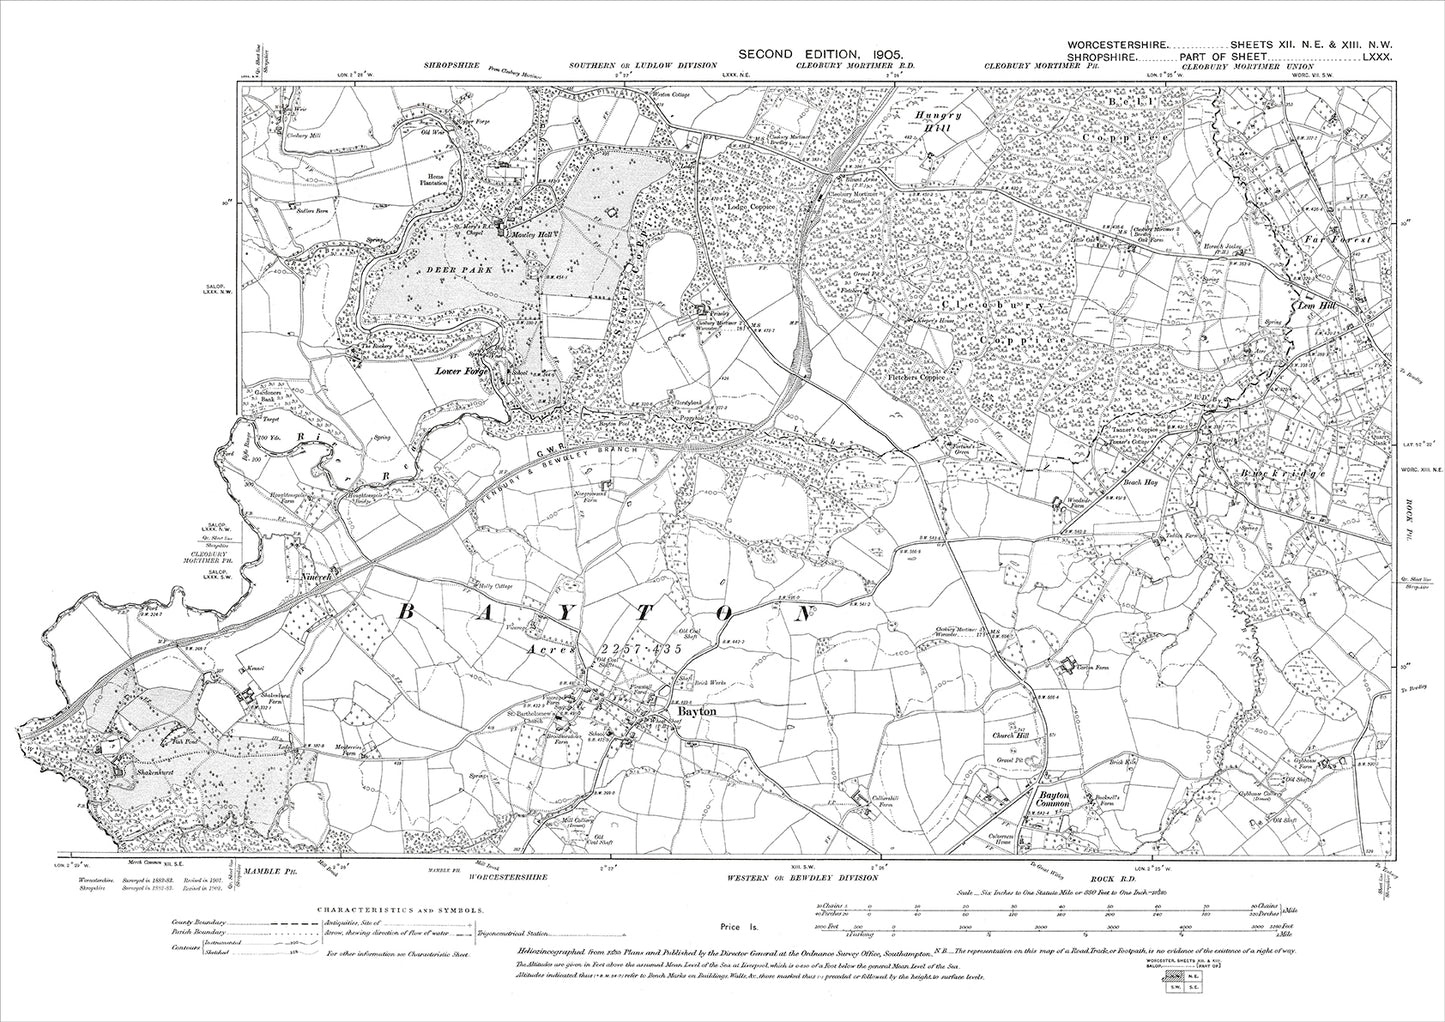 Bayton, Buckridge, old map Worcestershire 1905: 12NE-13NW